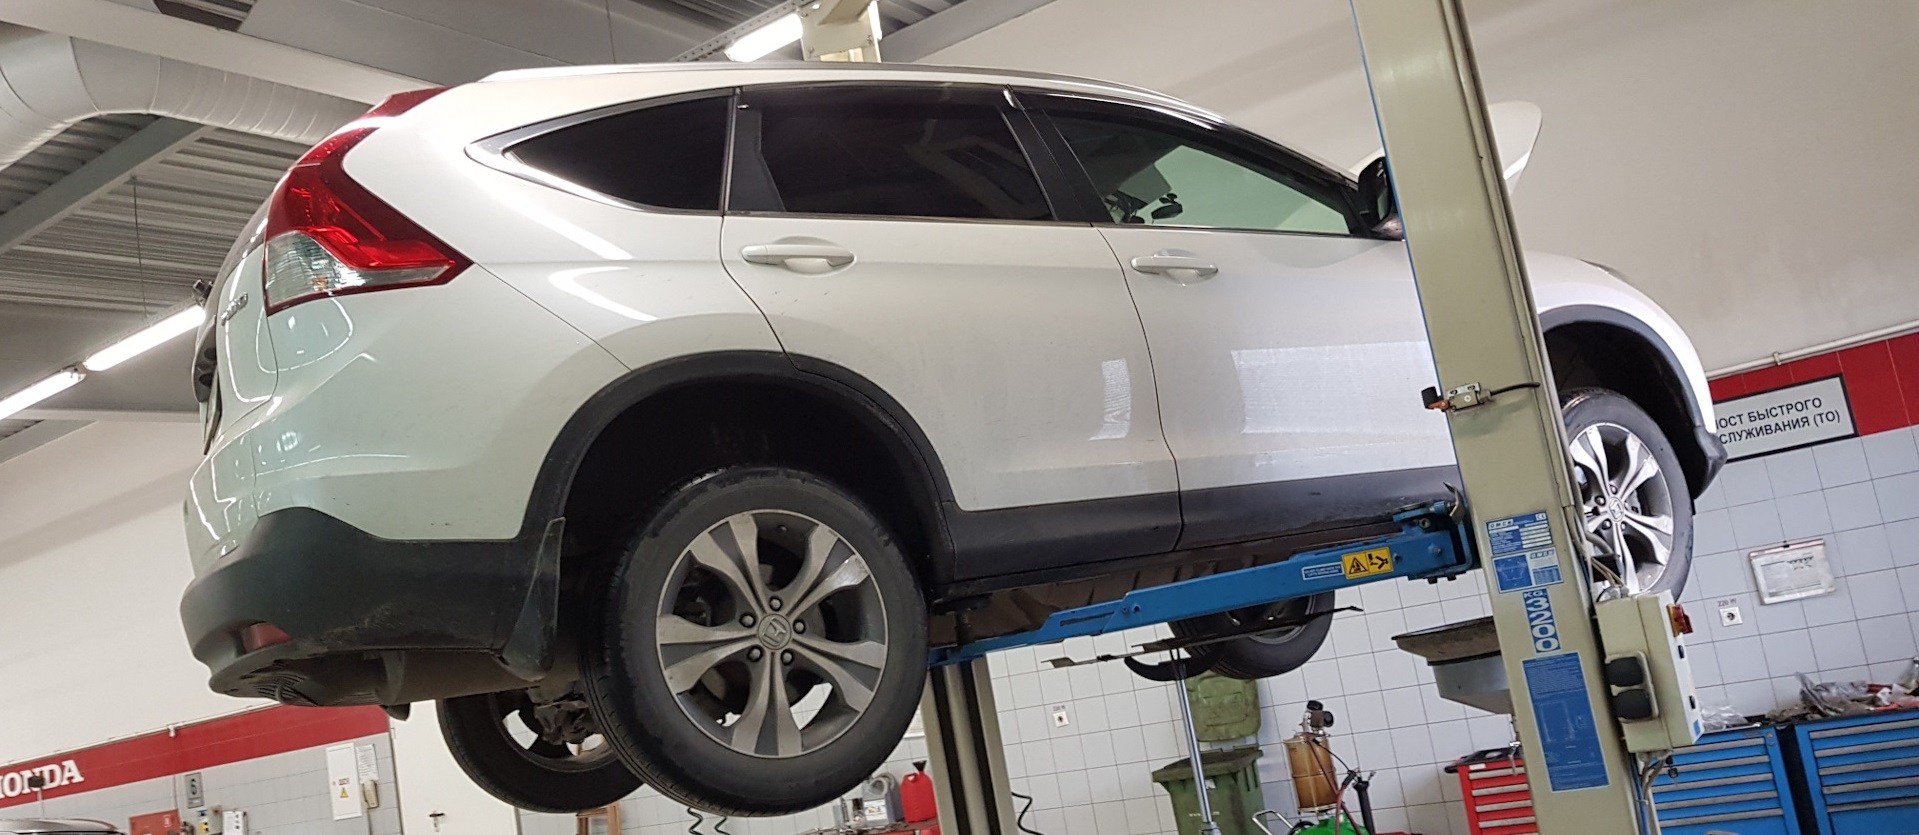 ремонт Honda CR-V в специализированном сервисе